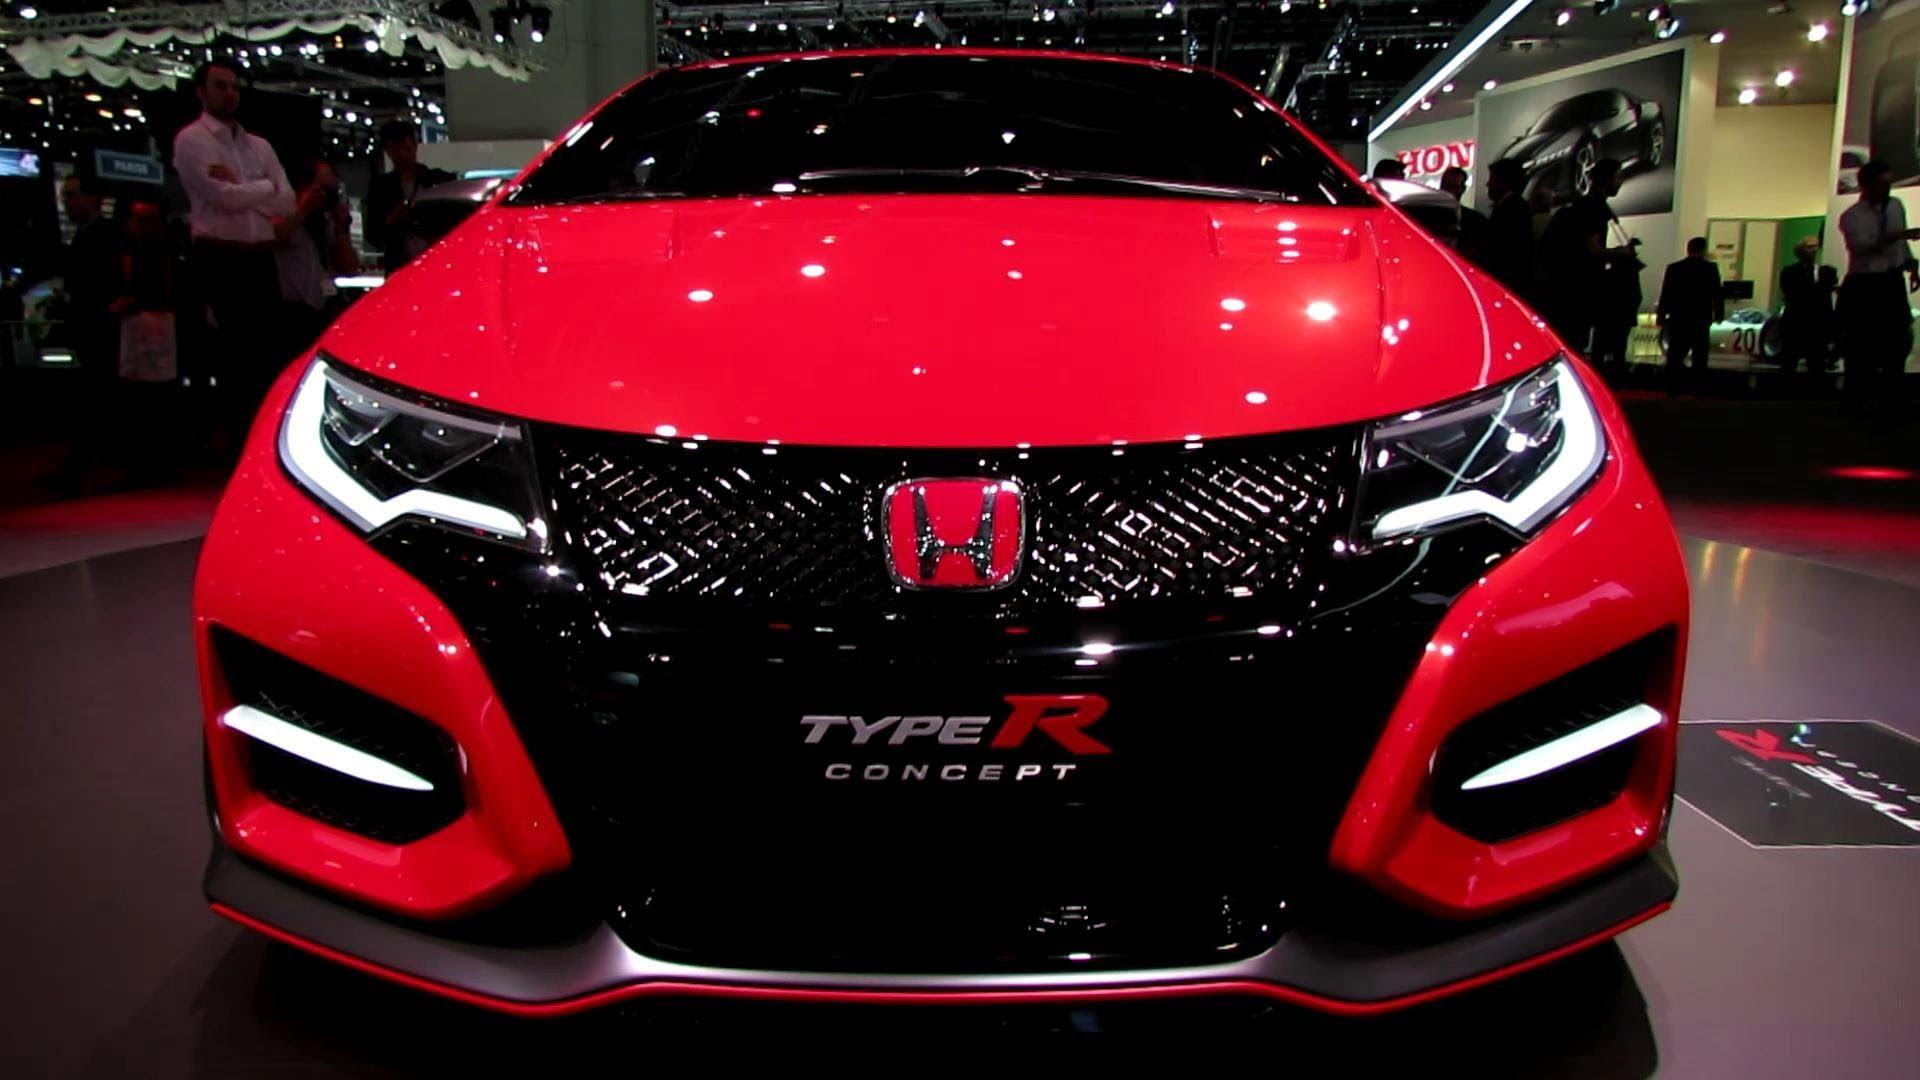 Honda Civic Type R Concept Walkaround